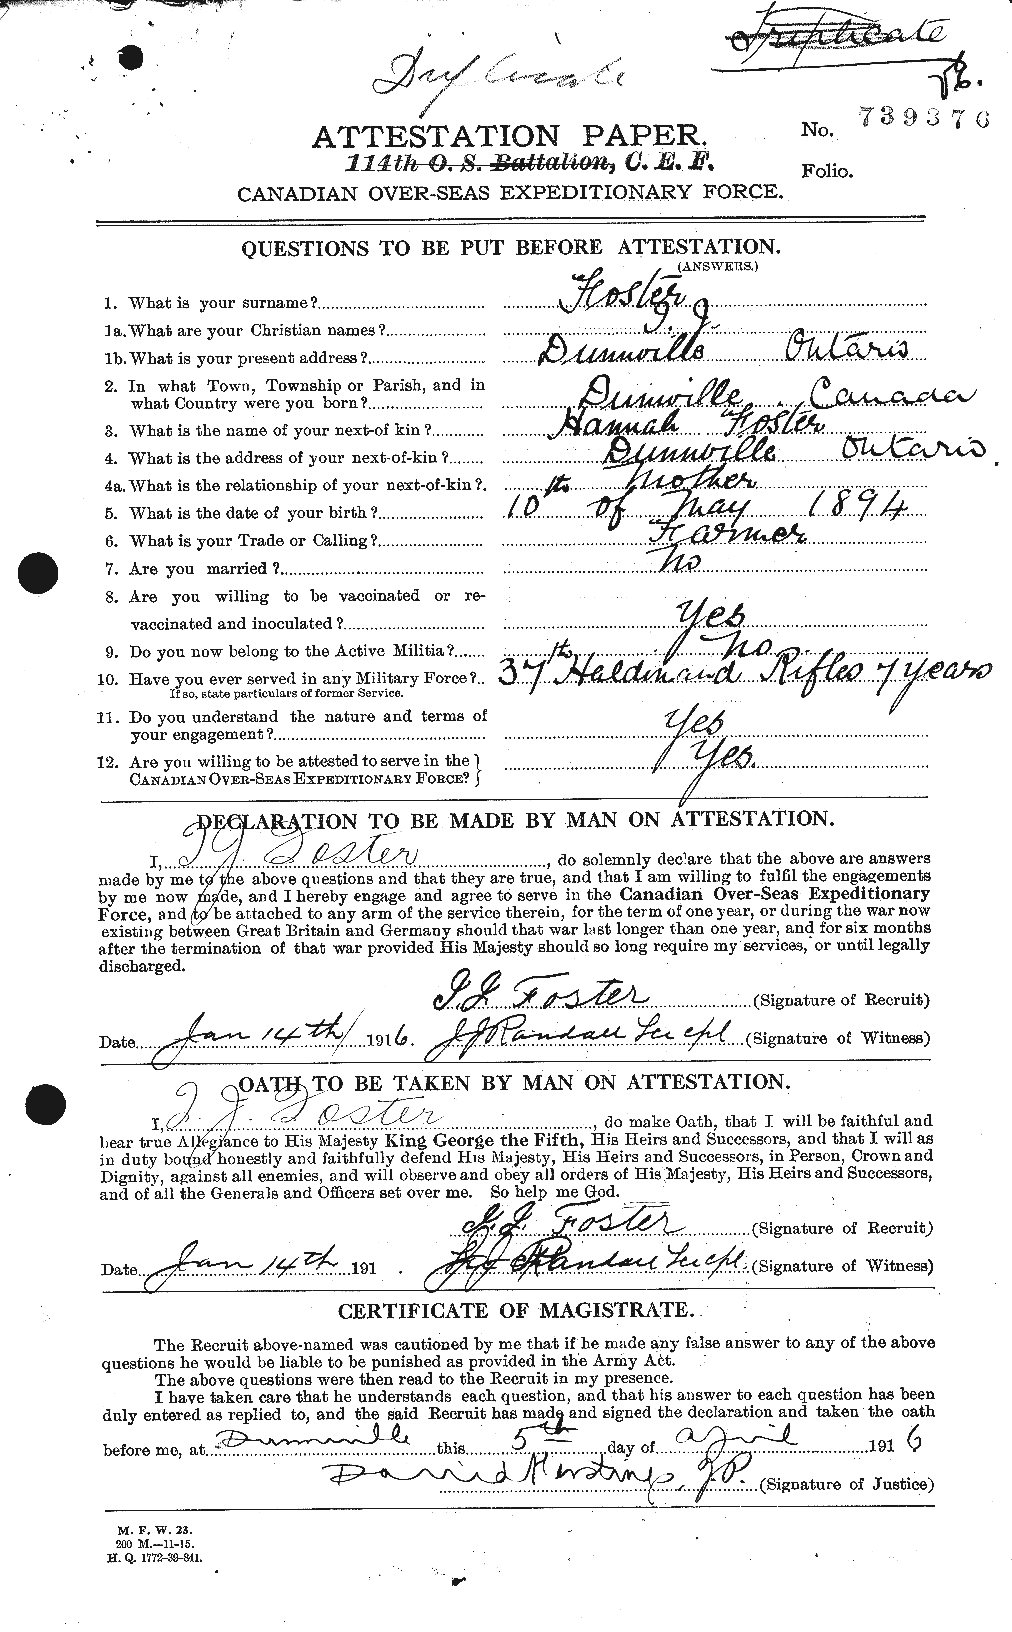 Dossiers du Personnel de la Première Guerre mondiale - CEC 333269a